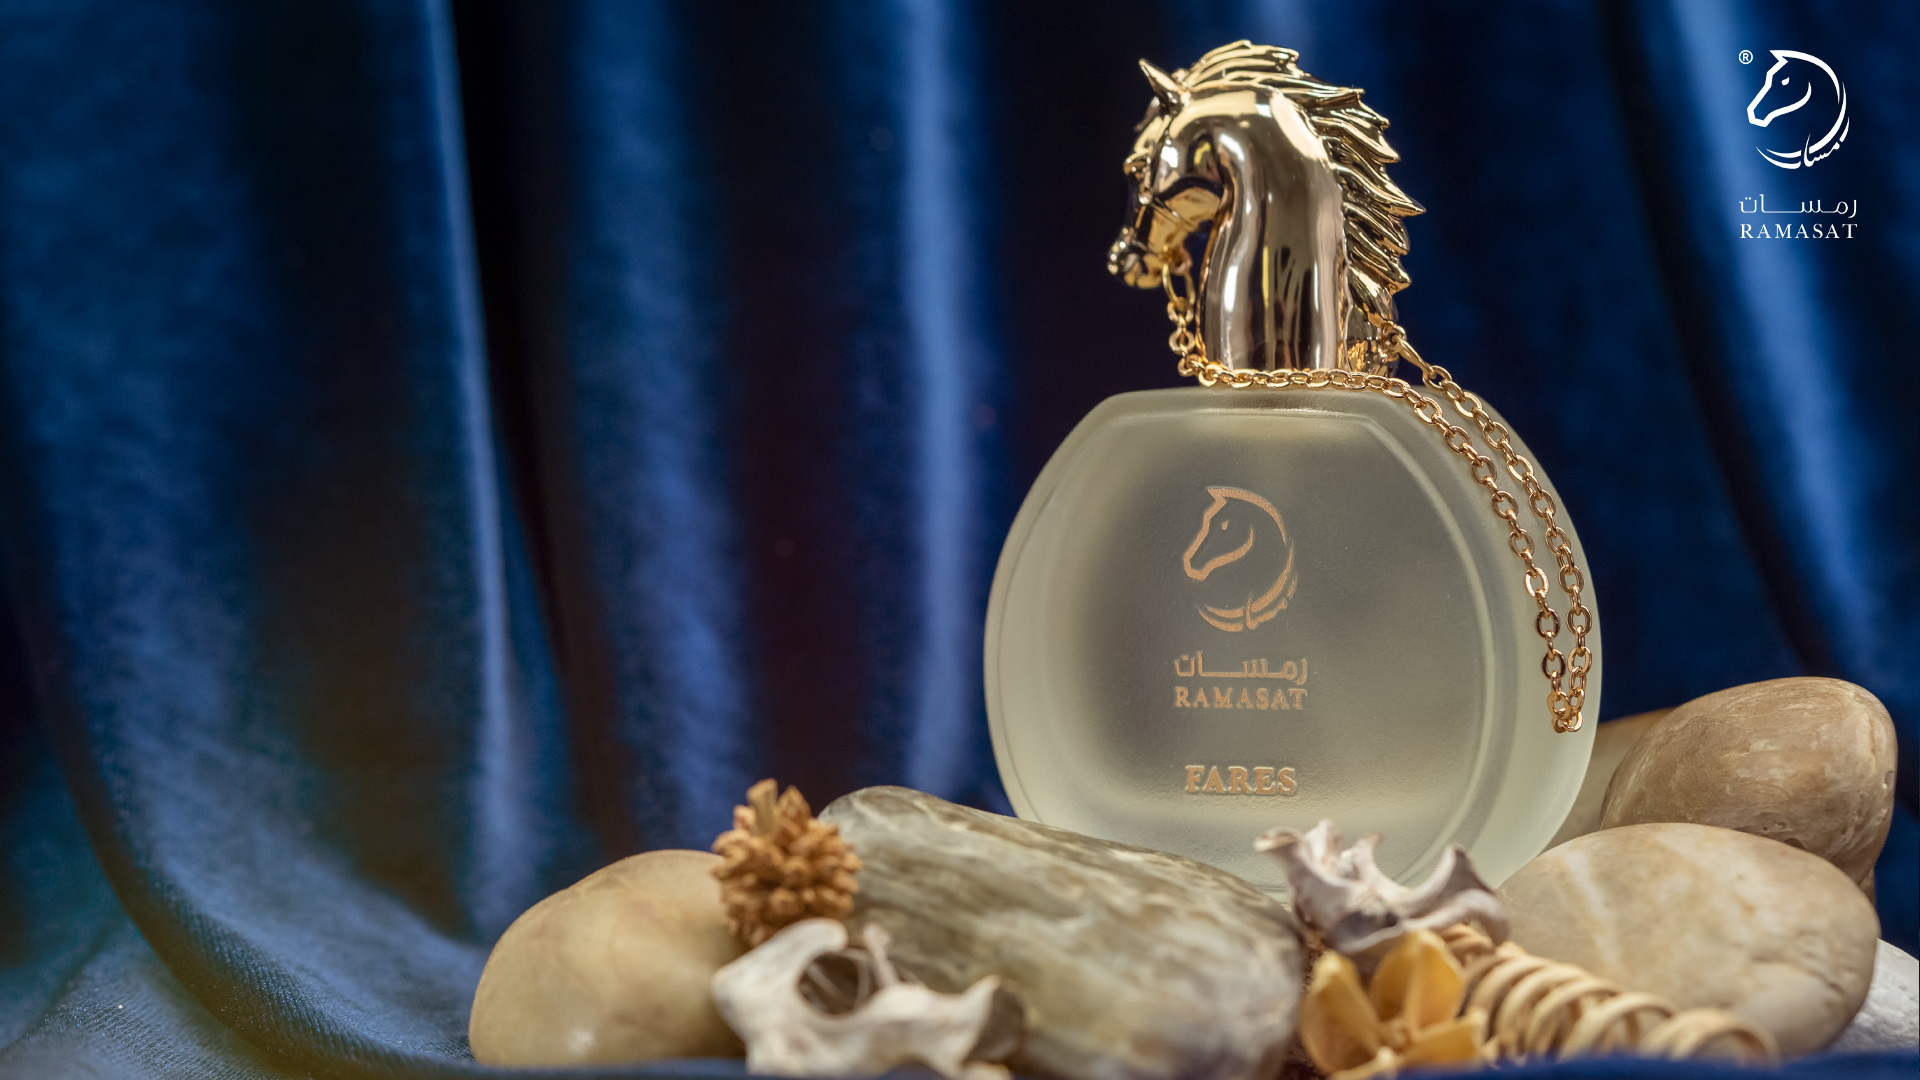 Perfumes for Men in Dubai